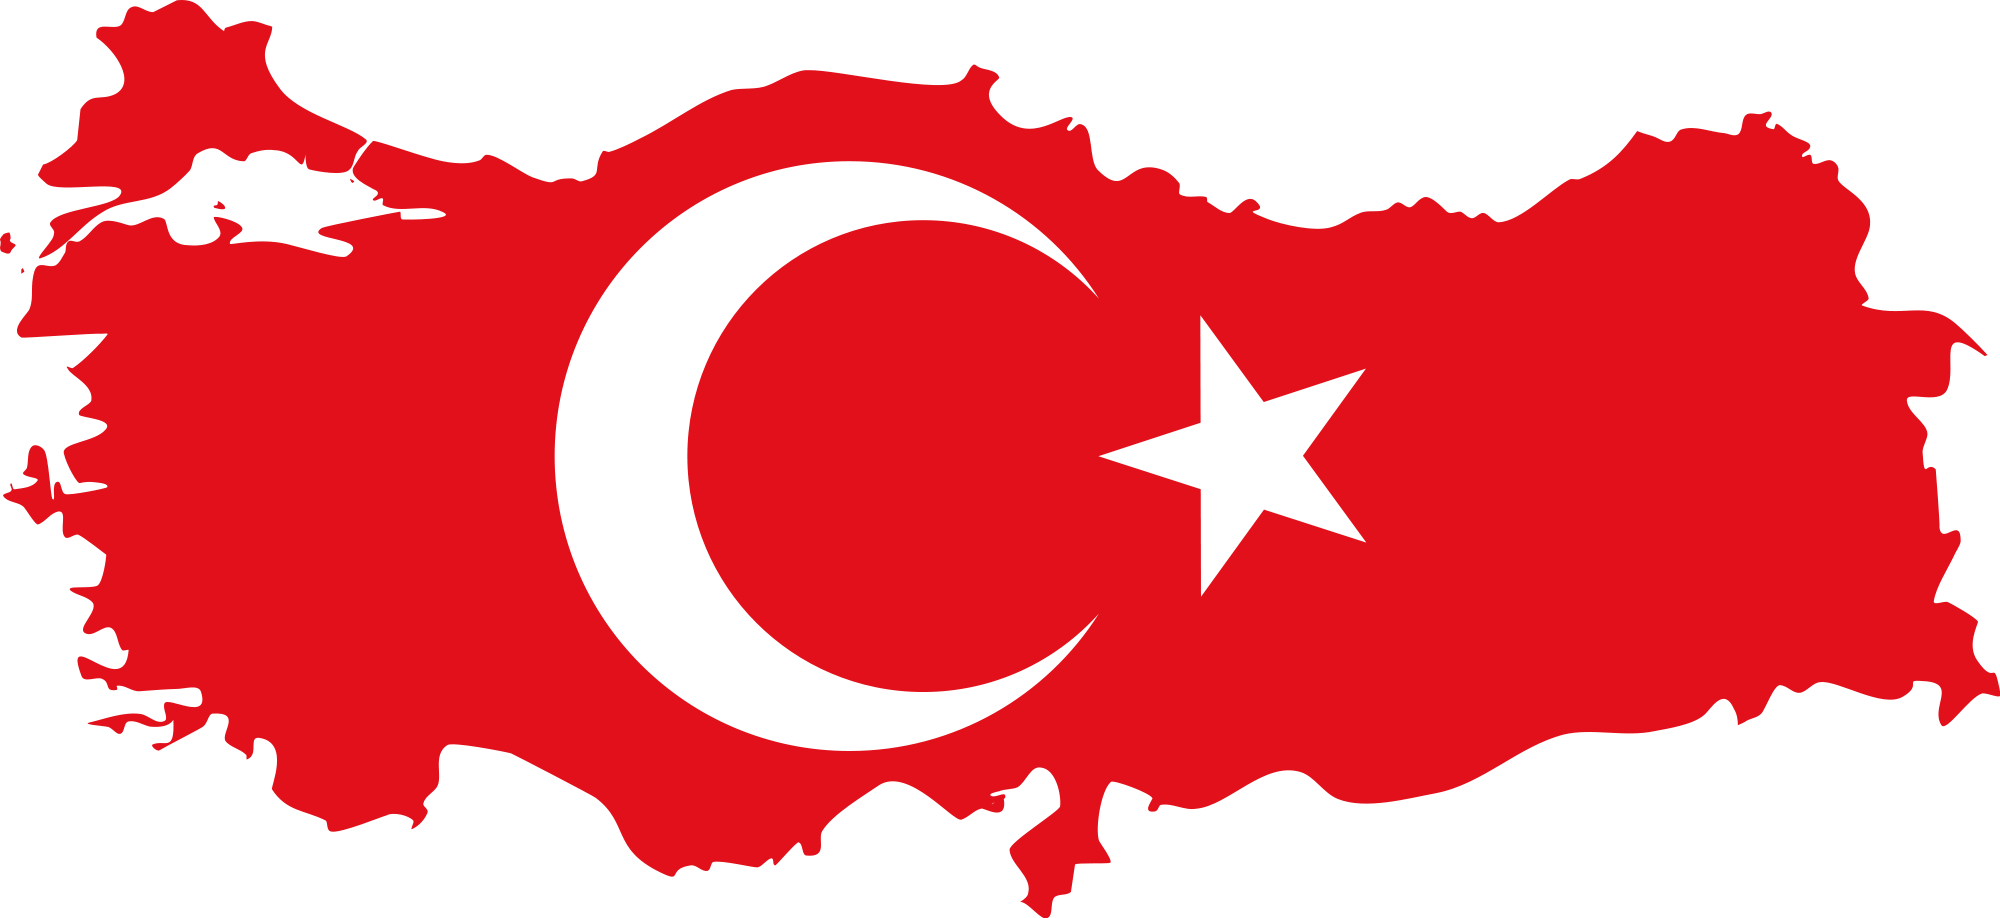 #türkiyem #bayrak   - Shared on Cankutay Ozelci 20 July 2016, Wednesday.